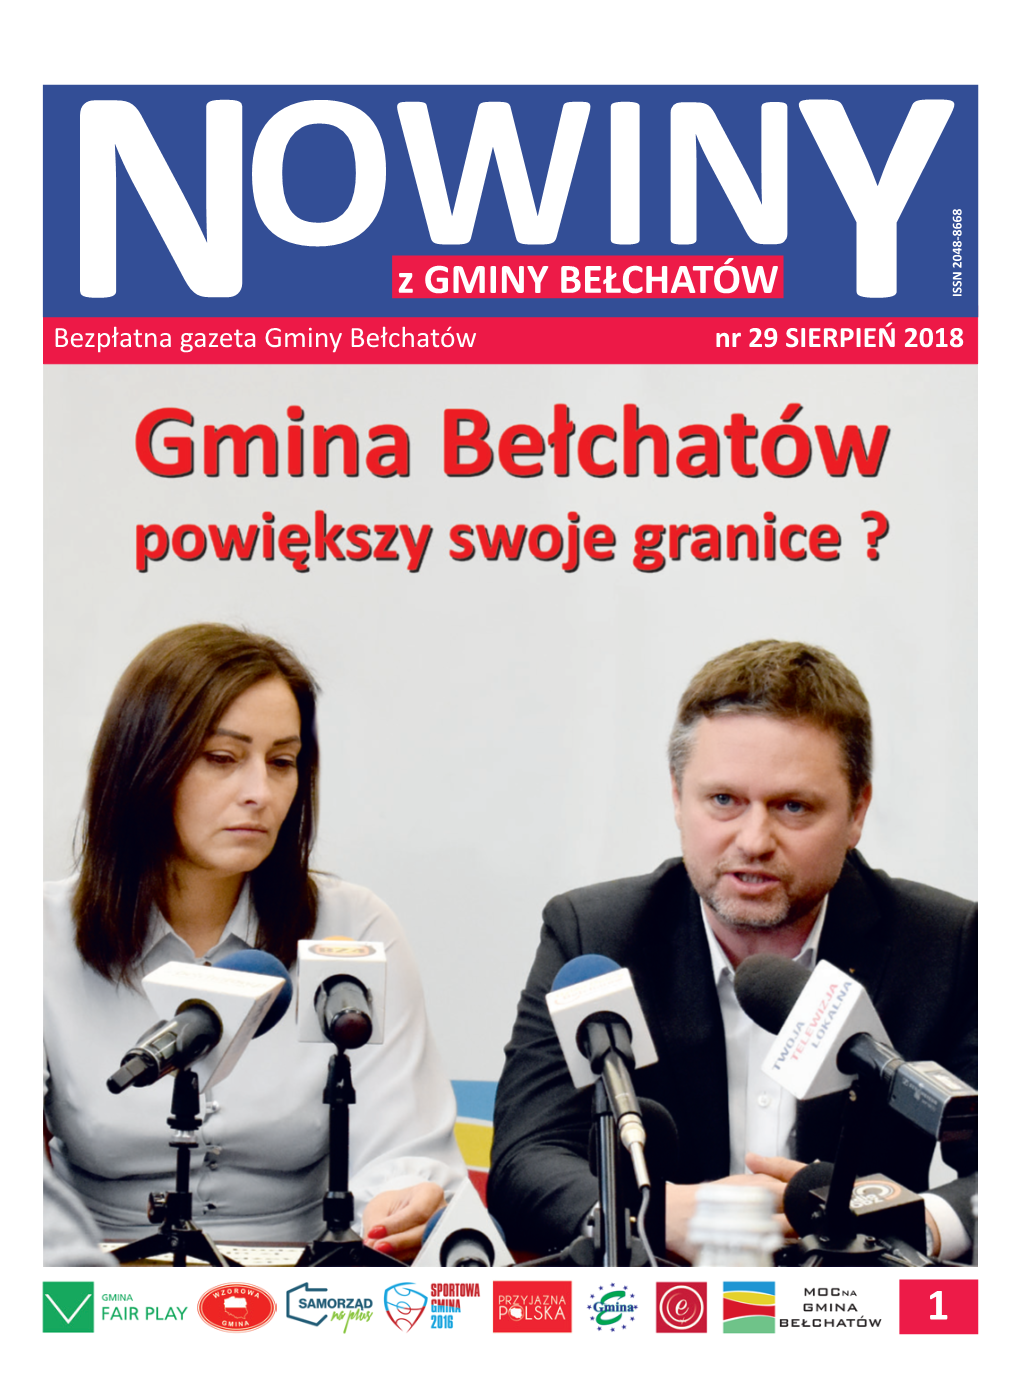 Z GMINY BEŁCHATÓW ISSN 2048-8668 Bezpłatnan Gazeta Gminy Bełchatów Nr 29 SIERPIEŃY 2018